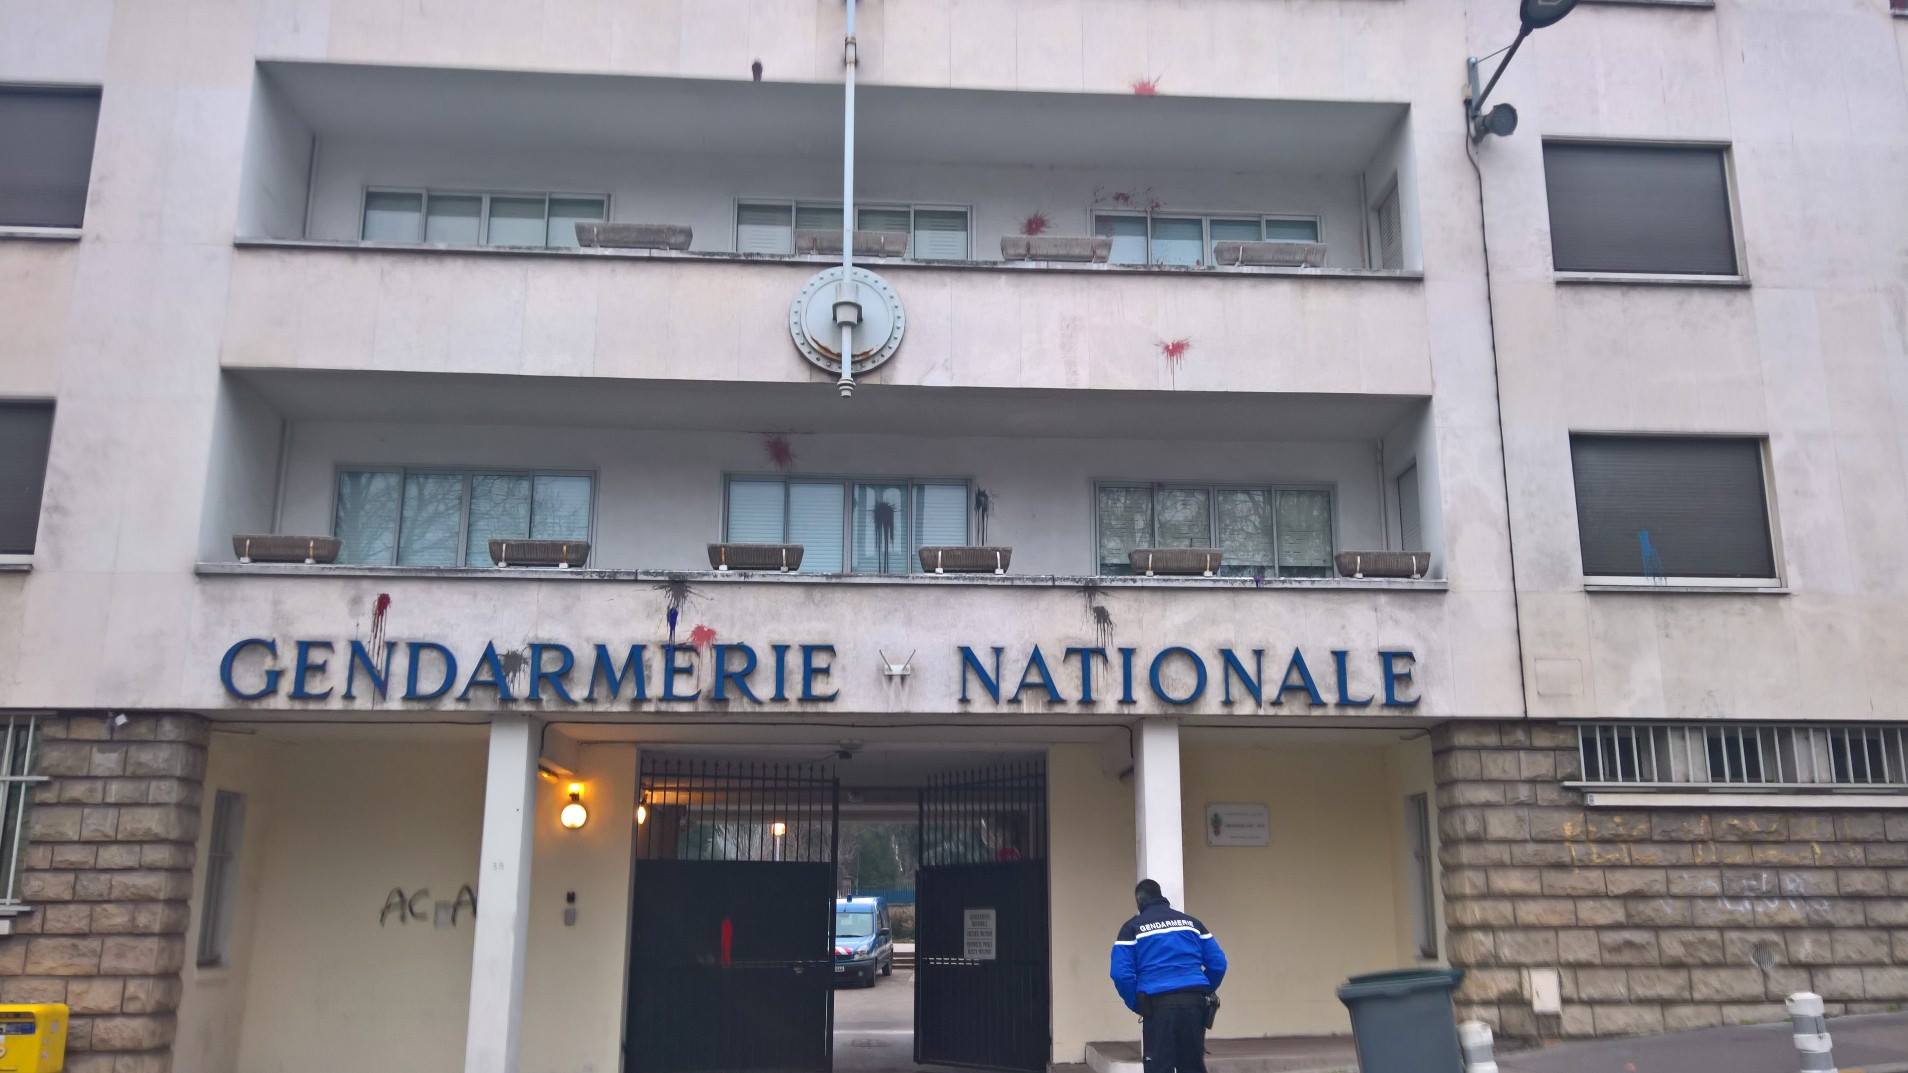 La façade de la gendarmerie rue Louis Ricard à Rouen a essuyé des jets de projectiles au départ de la manifestation samedi (Photo publiée par la gendarmerie sur son compte Facebook)